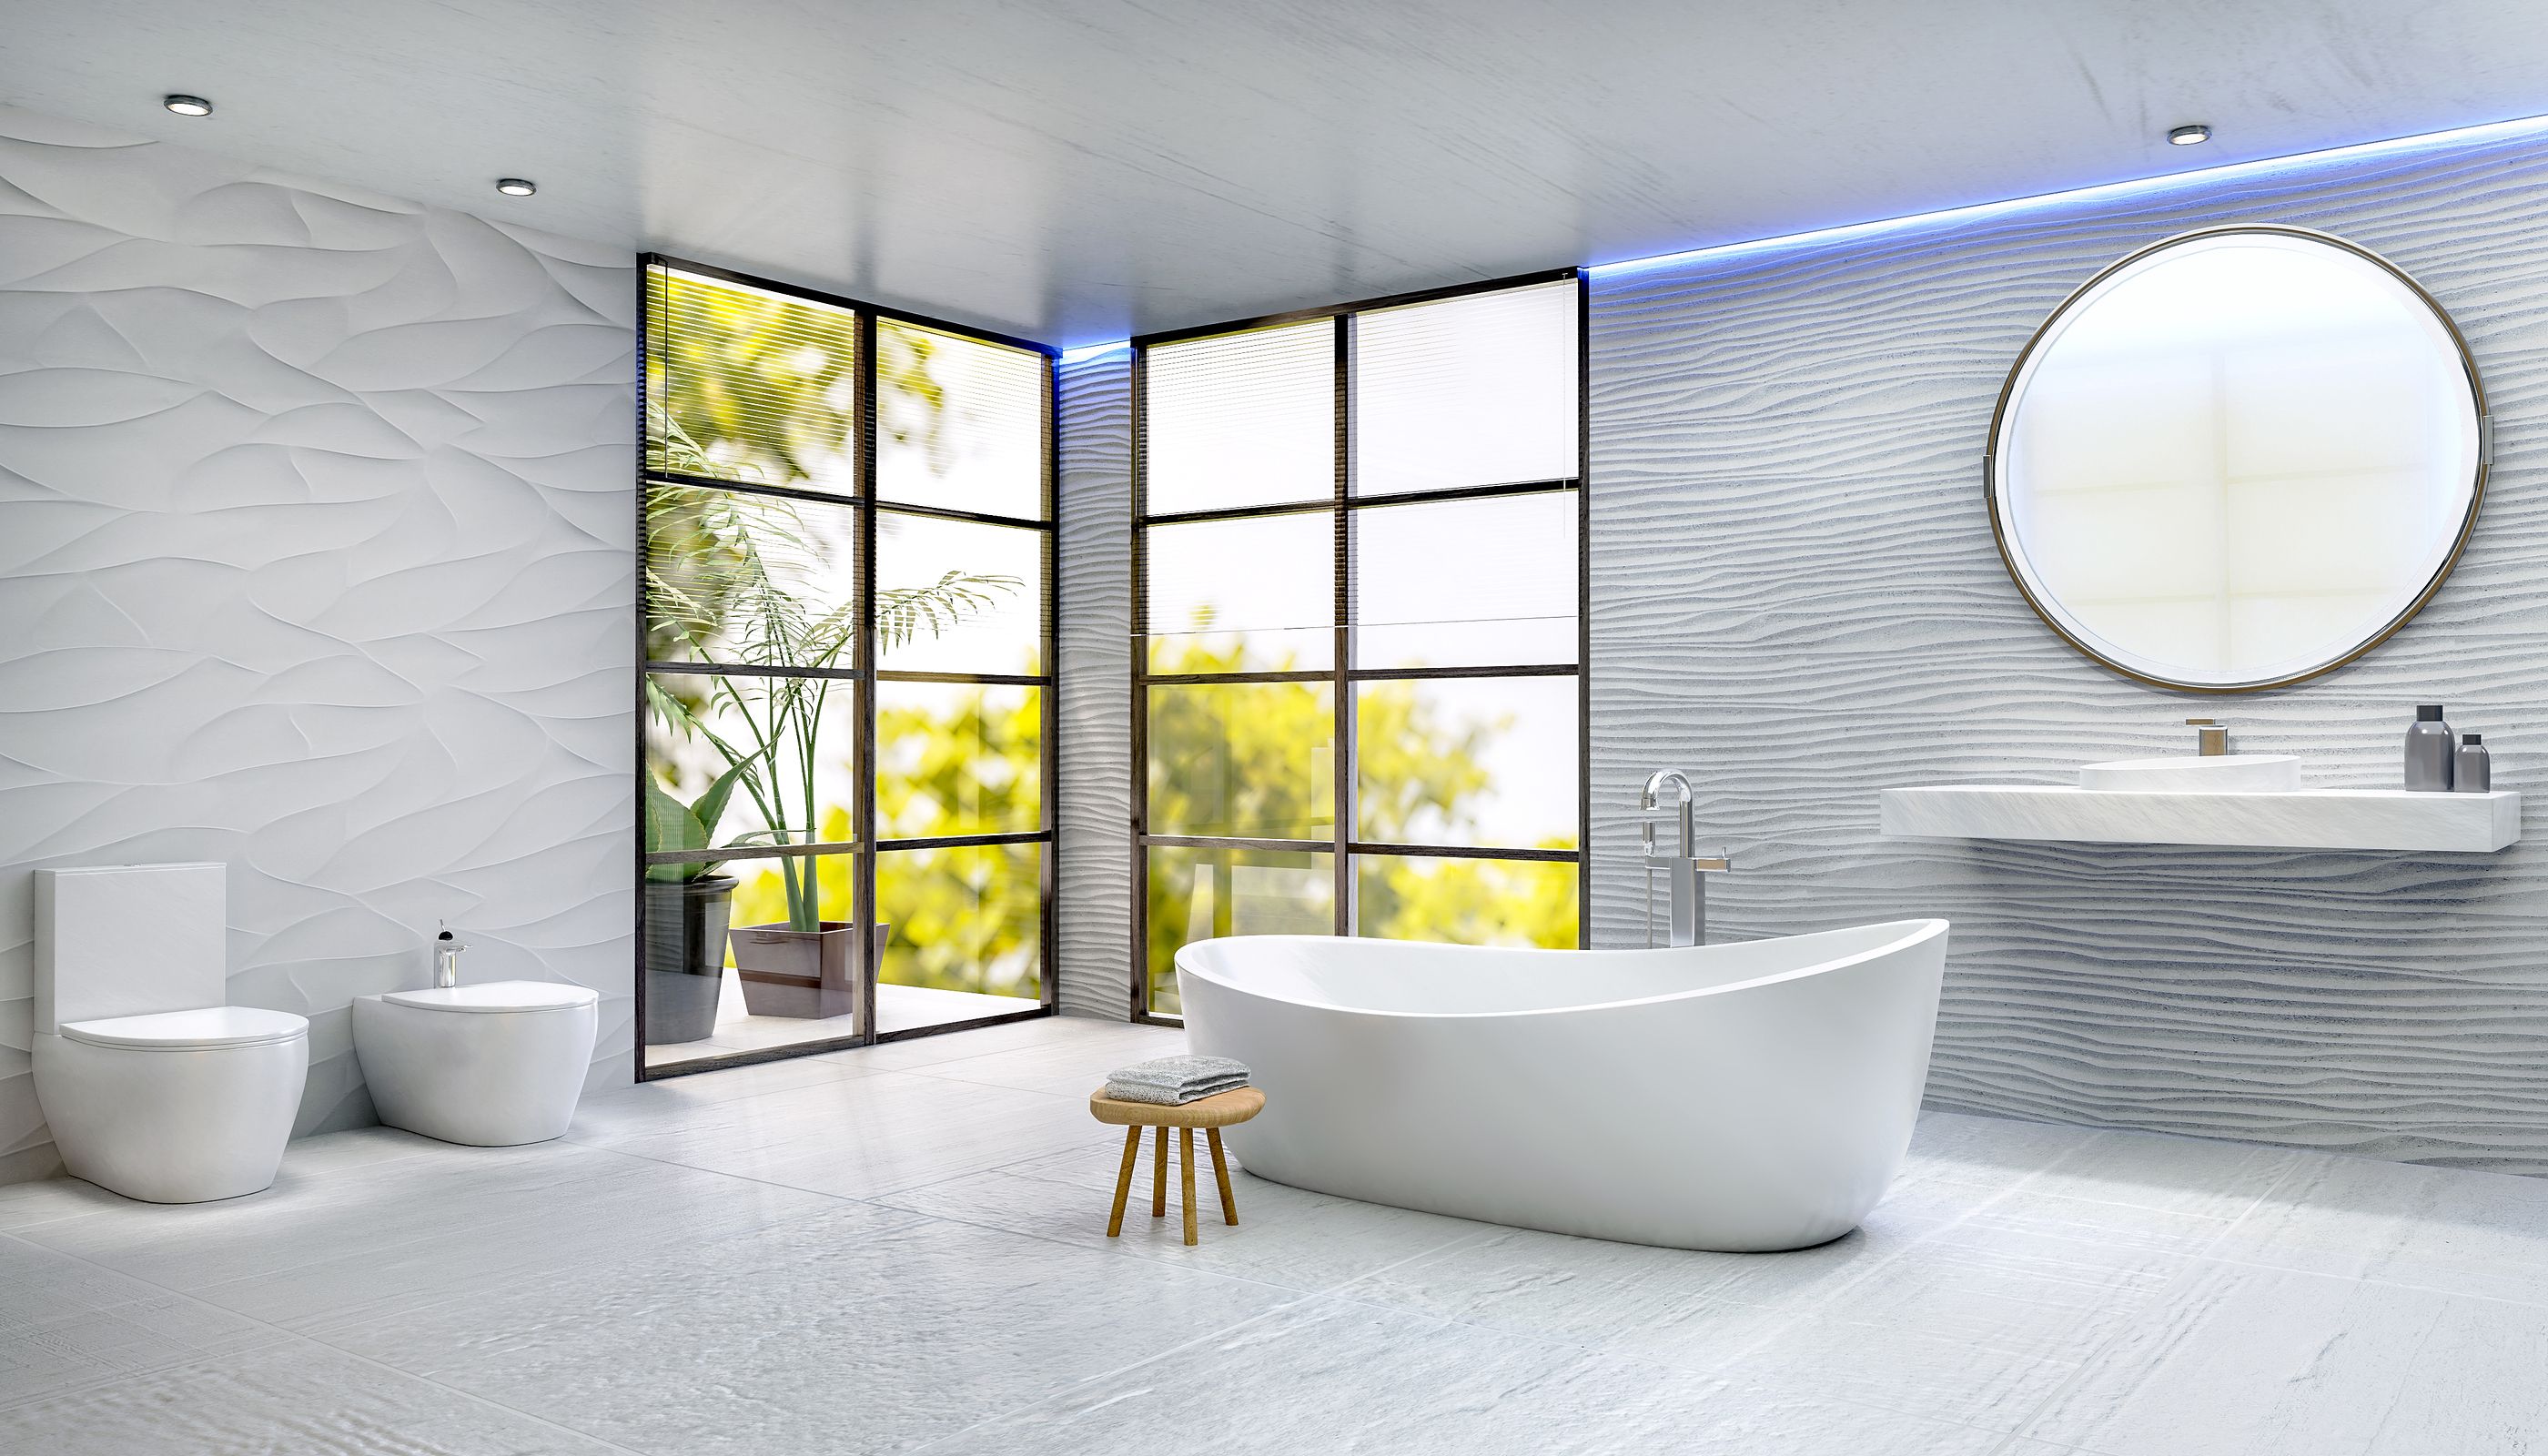 Líneas onduladas para la decoración de tu hogar: Bañera ondulada (bigstock)